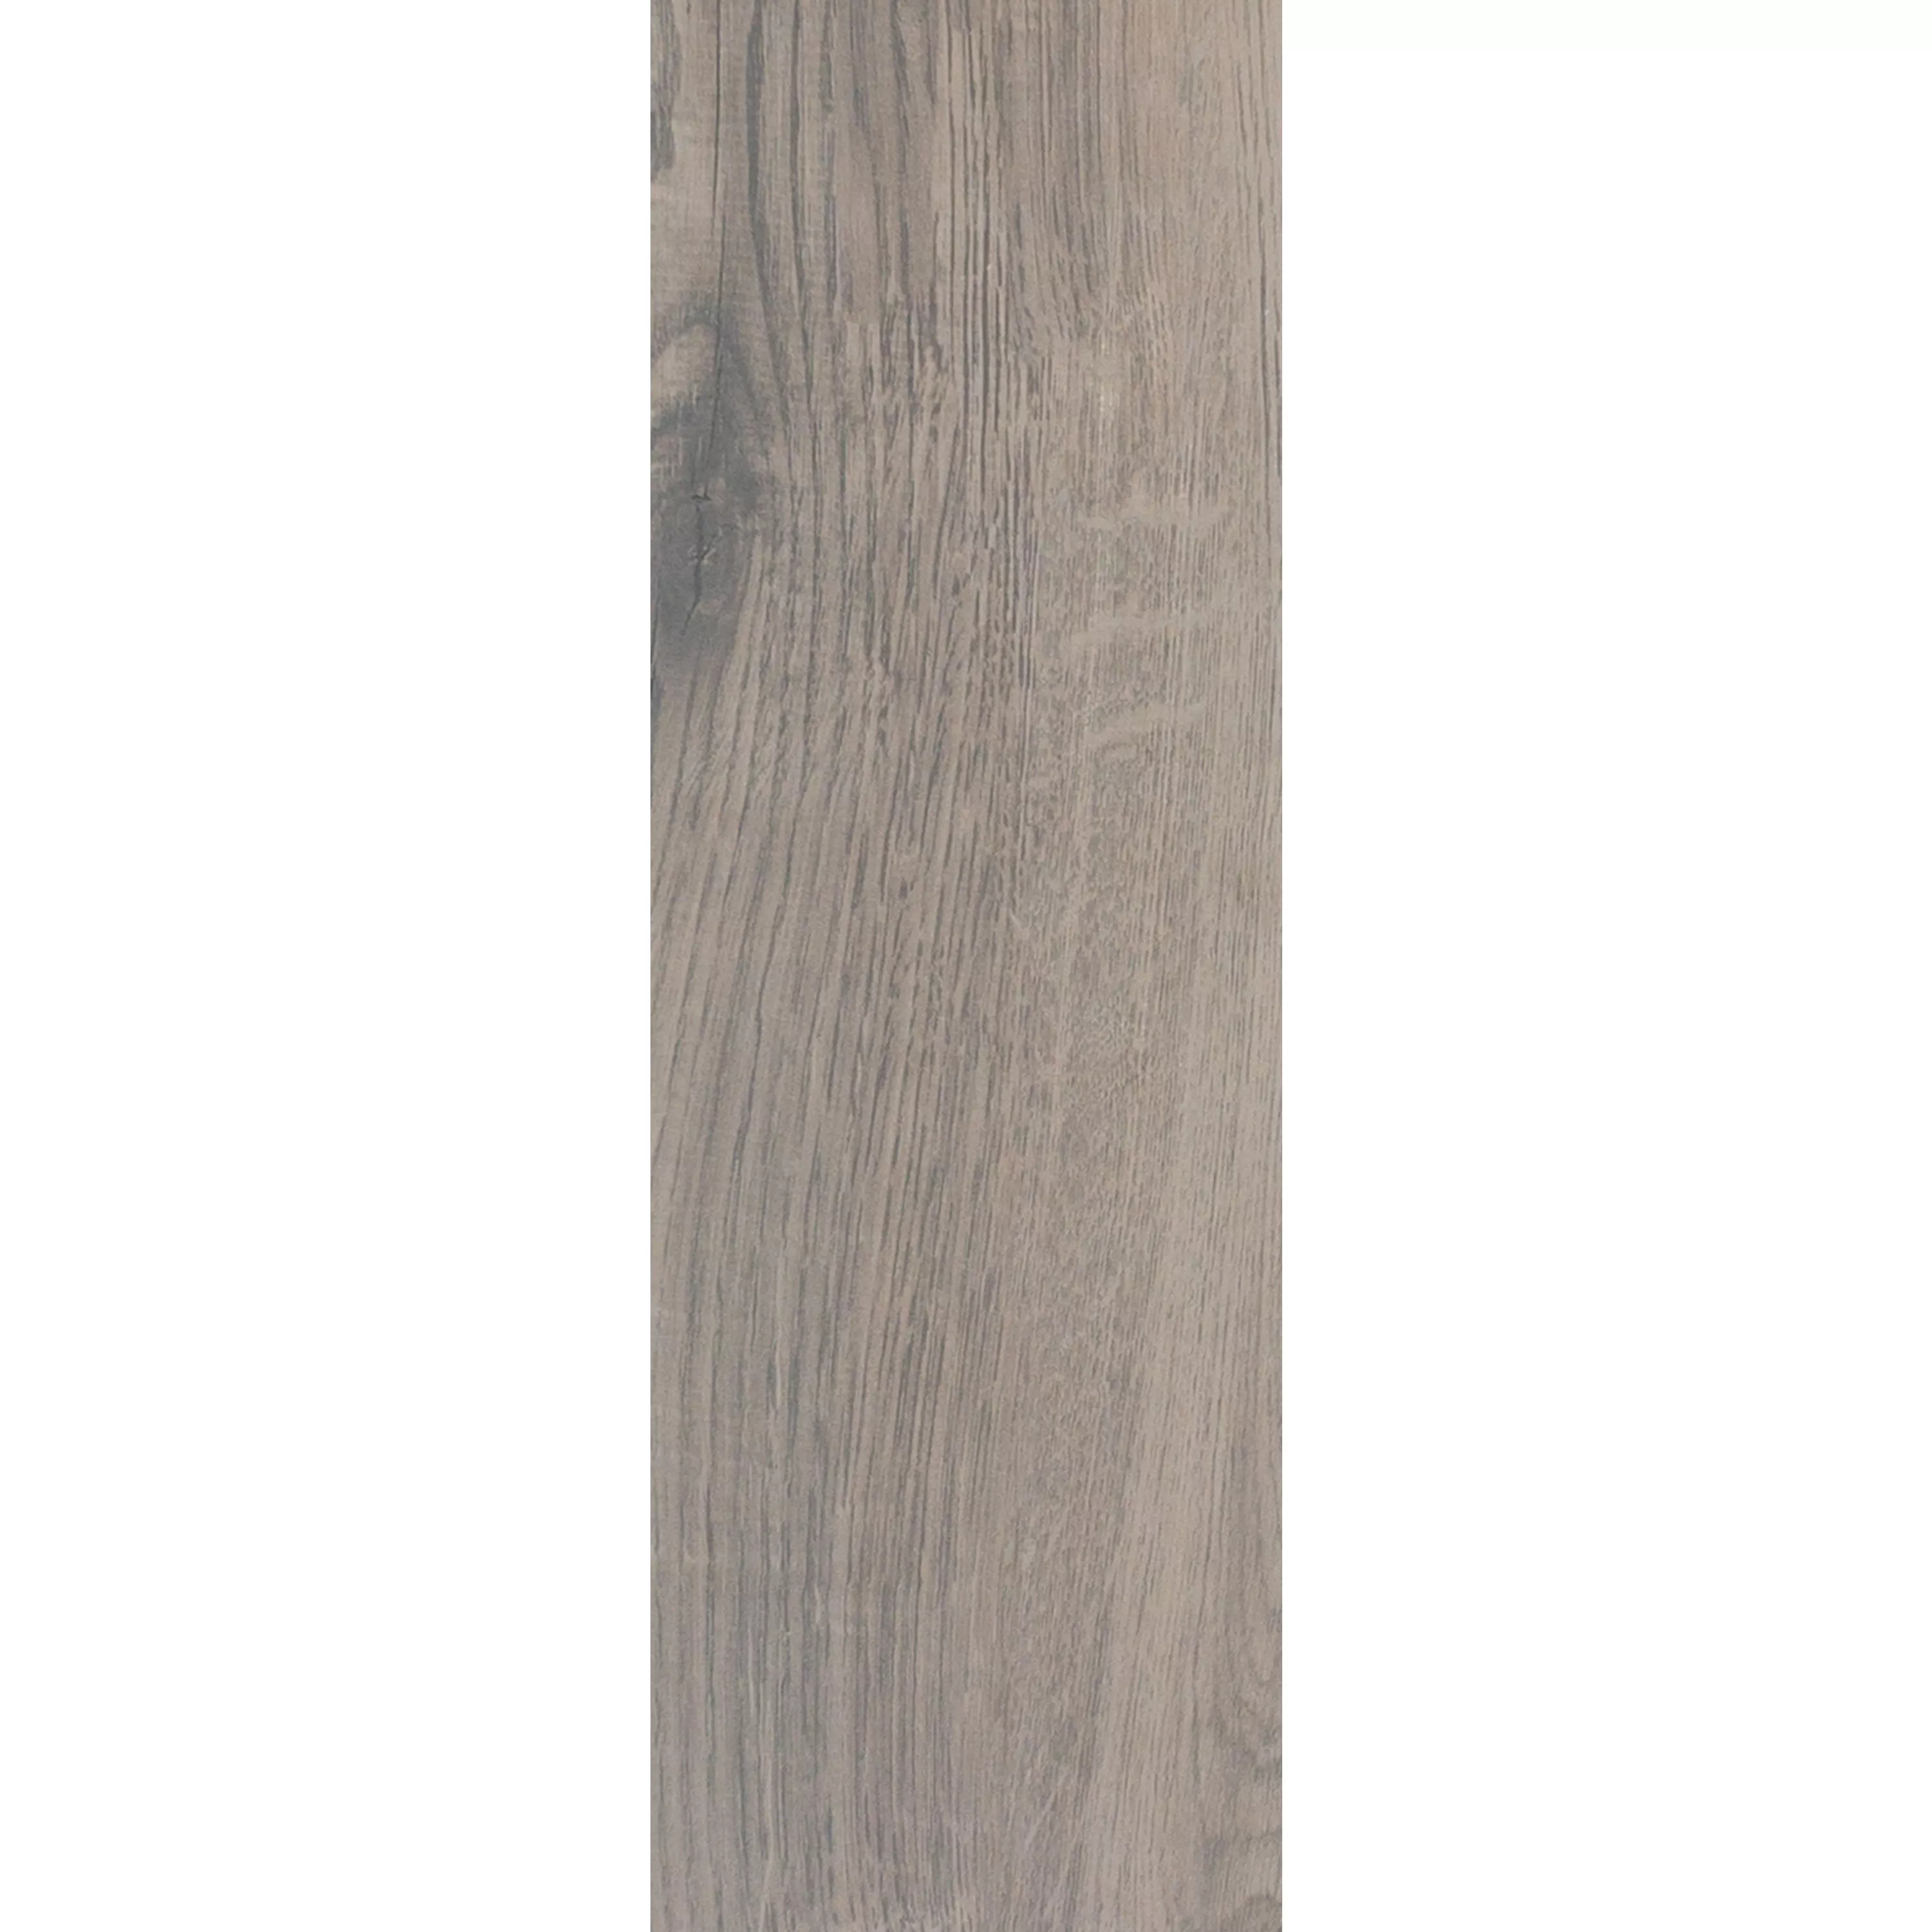 Sample Vloertegels Houtlook Fullwood Bruin 20x120cm